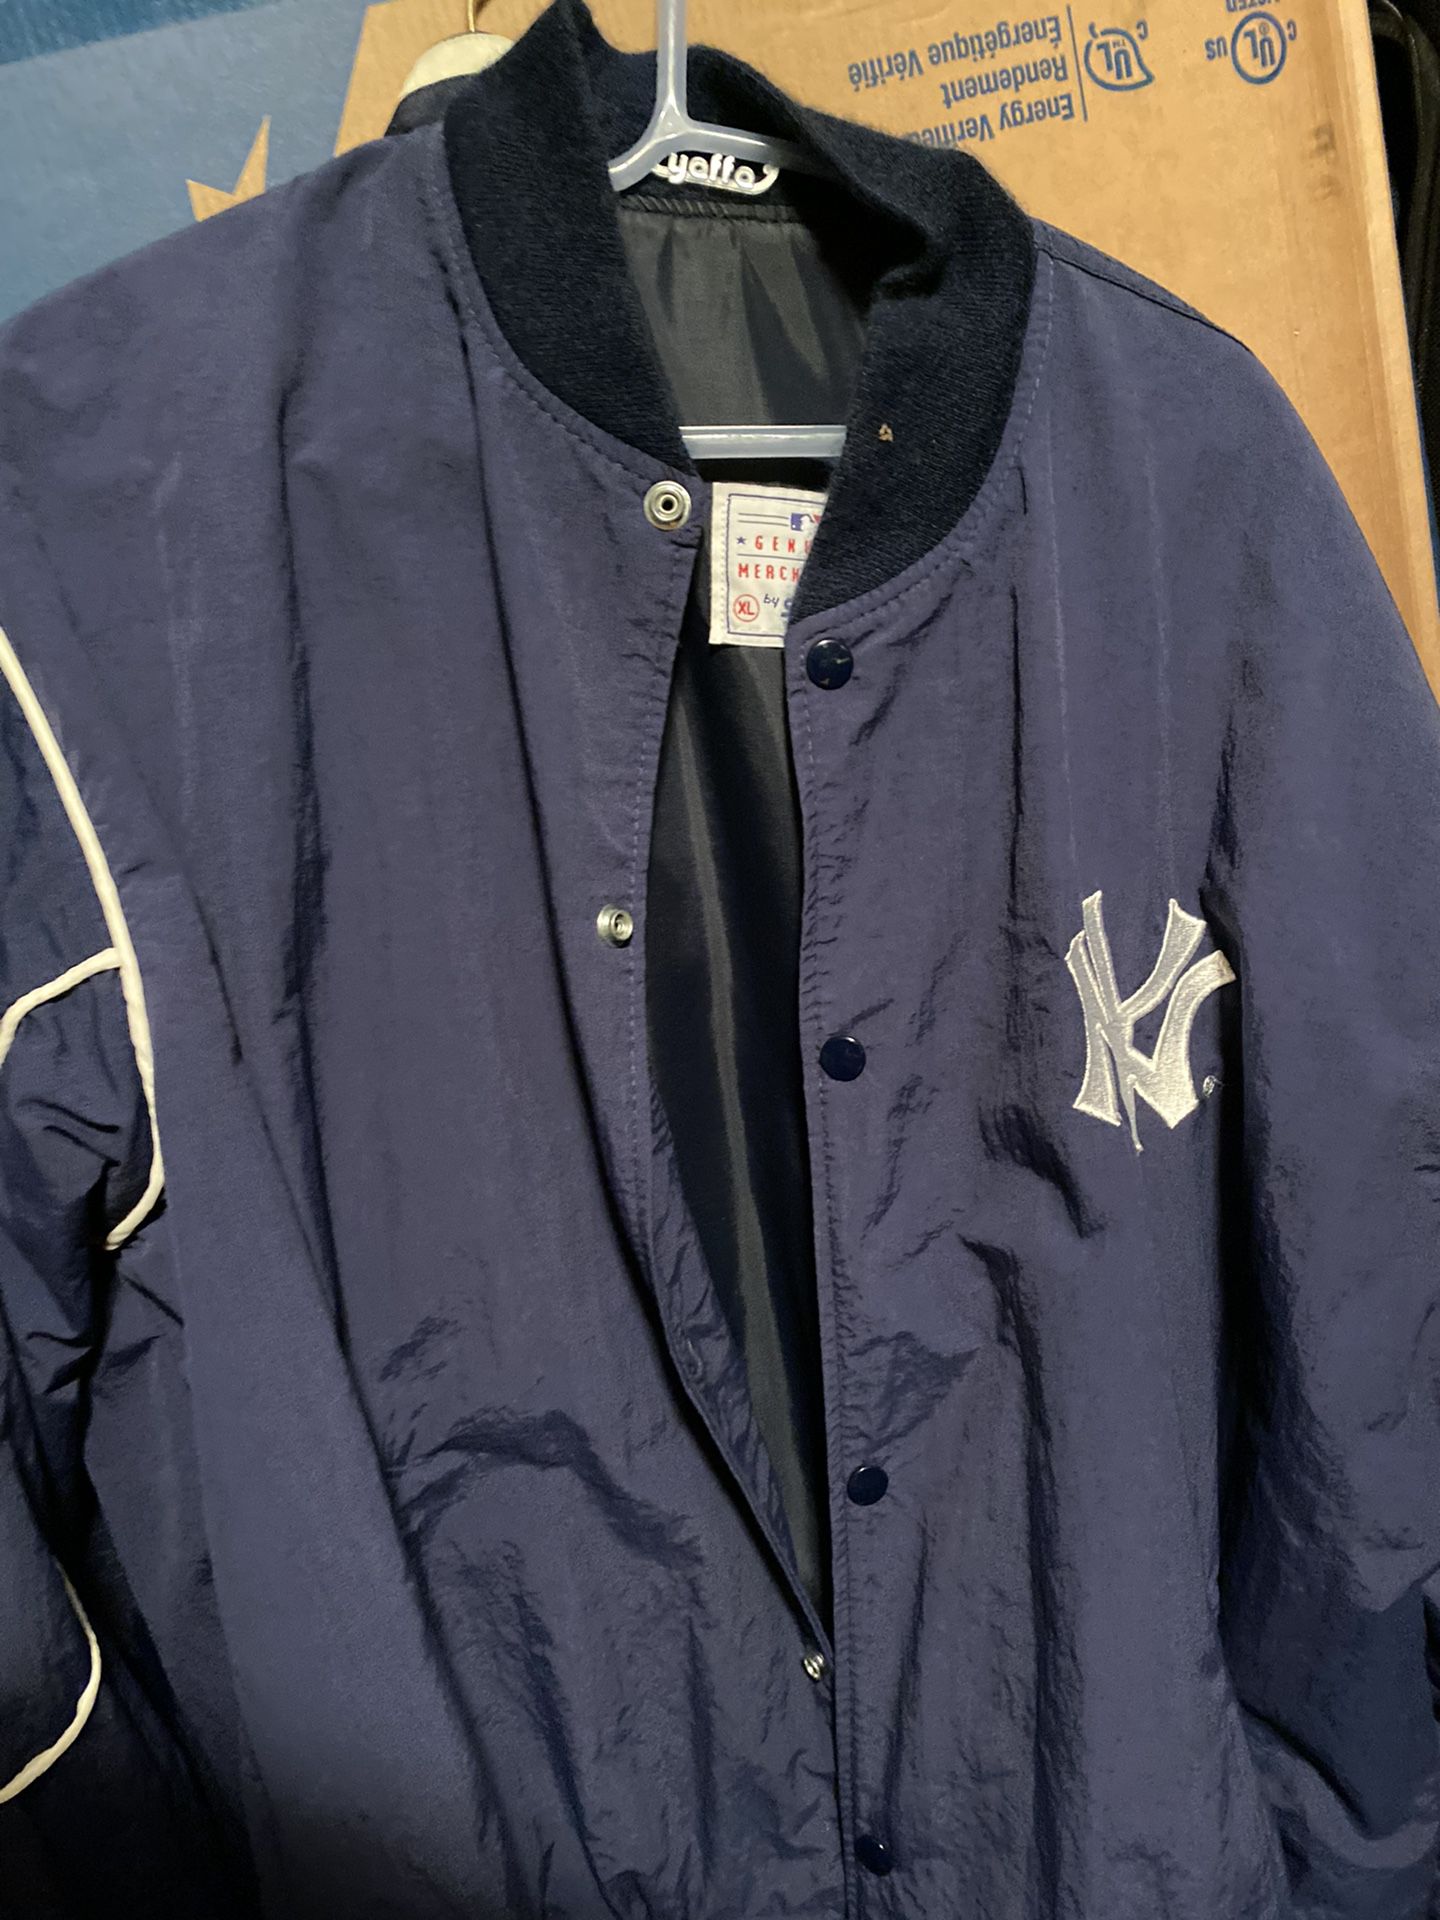 Yankee Jacket $20 X-large